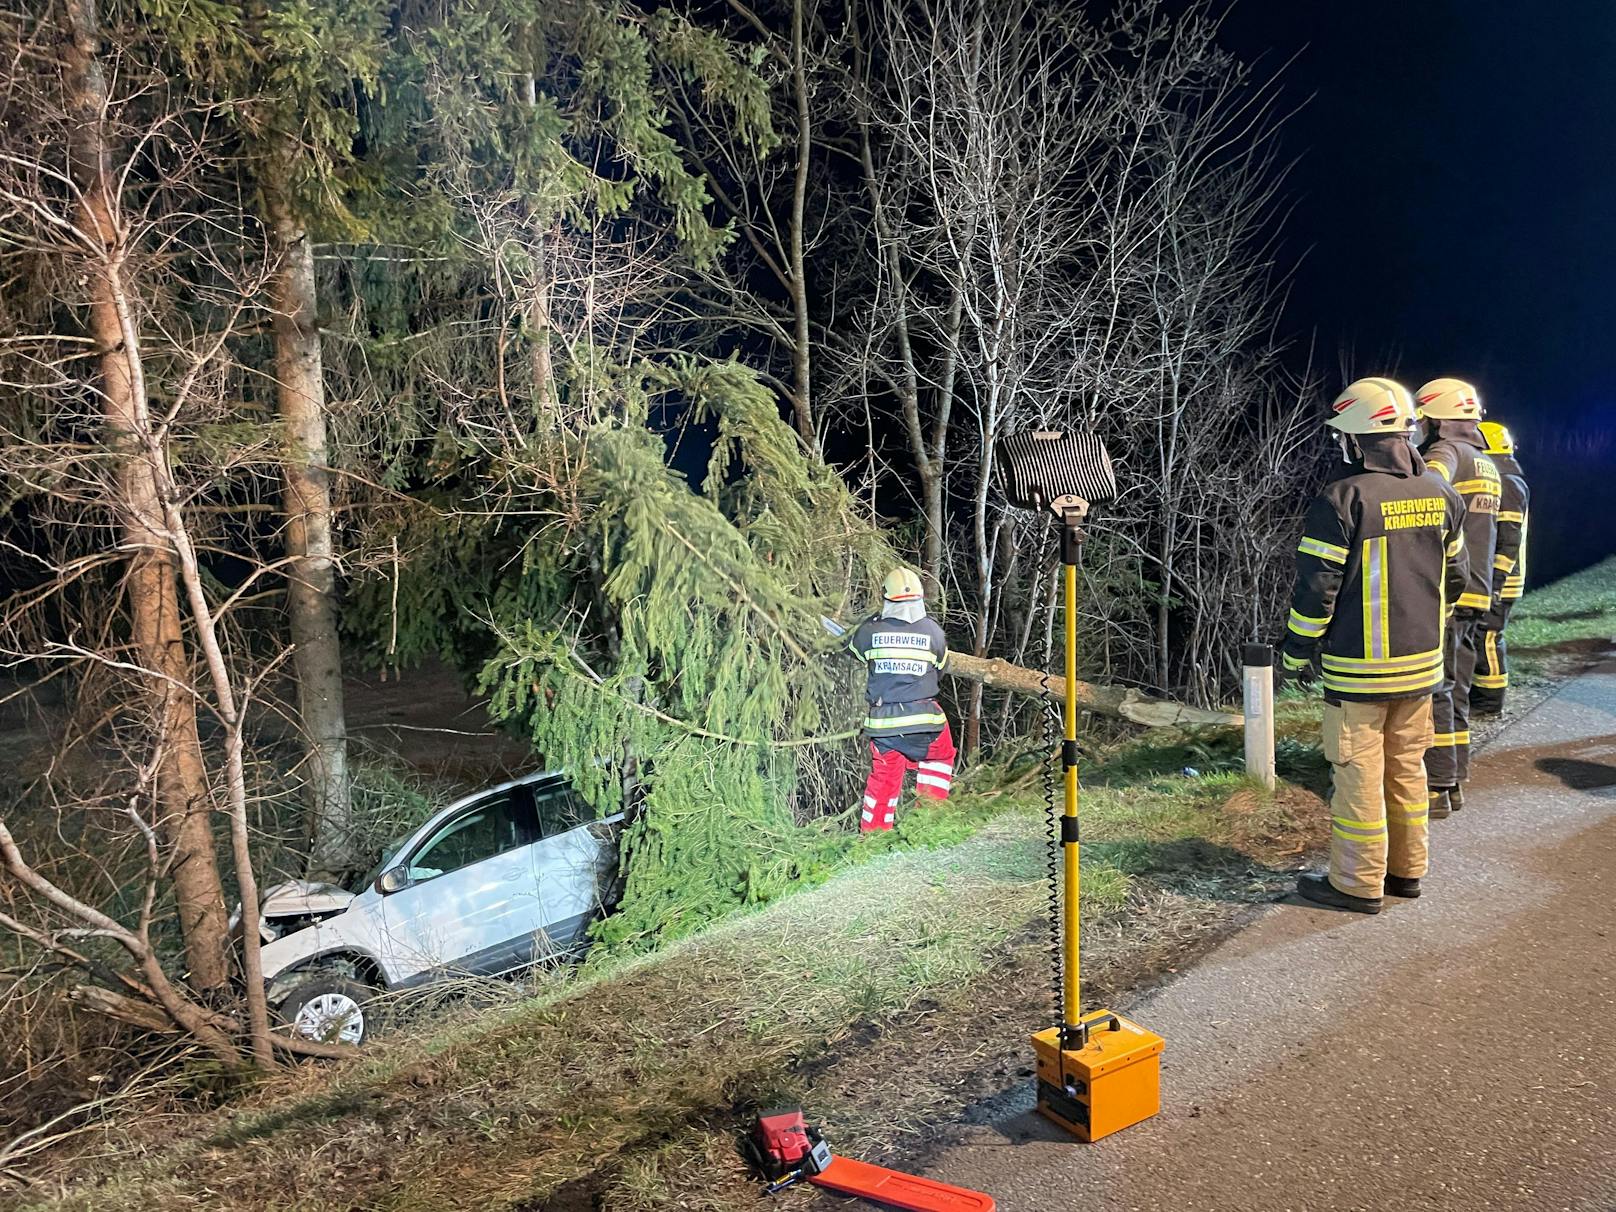 Der VW rutschte danach über eine Böschung und prallte gegen einen Baum. Dabei zog sich der Mann Verletzungen unbestimmten Grades zu. Er wurde von der Feuerwehr Kramsach aus dem Fahrzeug geborgen und von der Rettung in das Krankenhaus Kufstein eingeliefert.